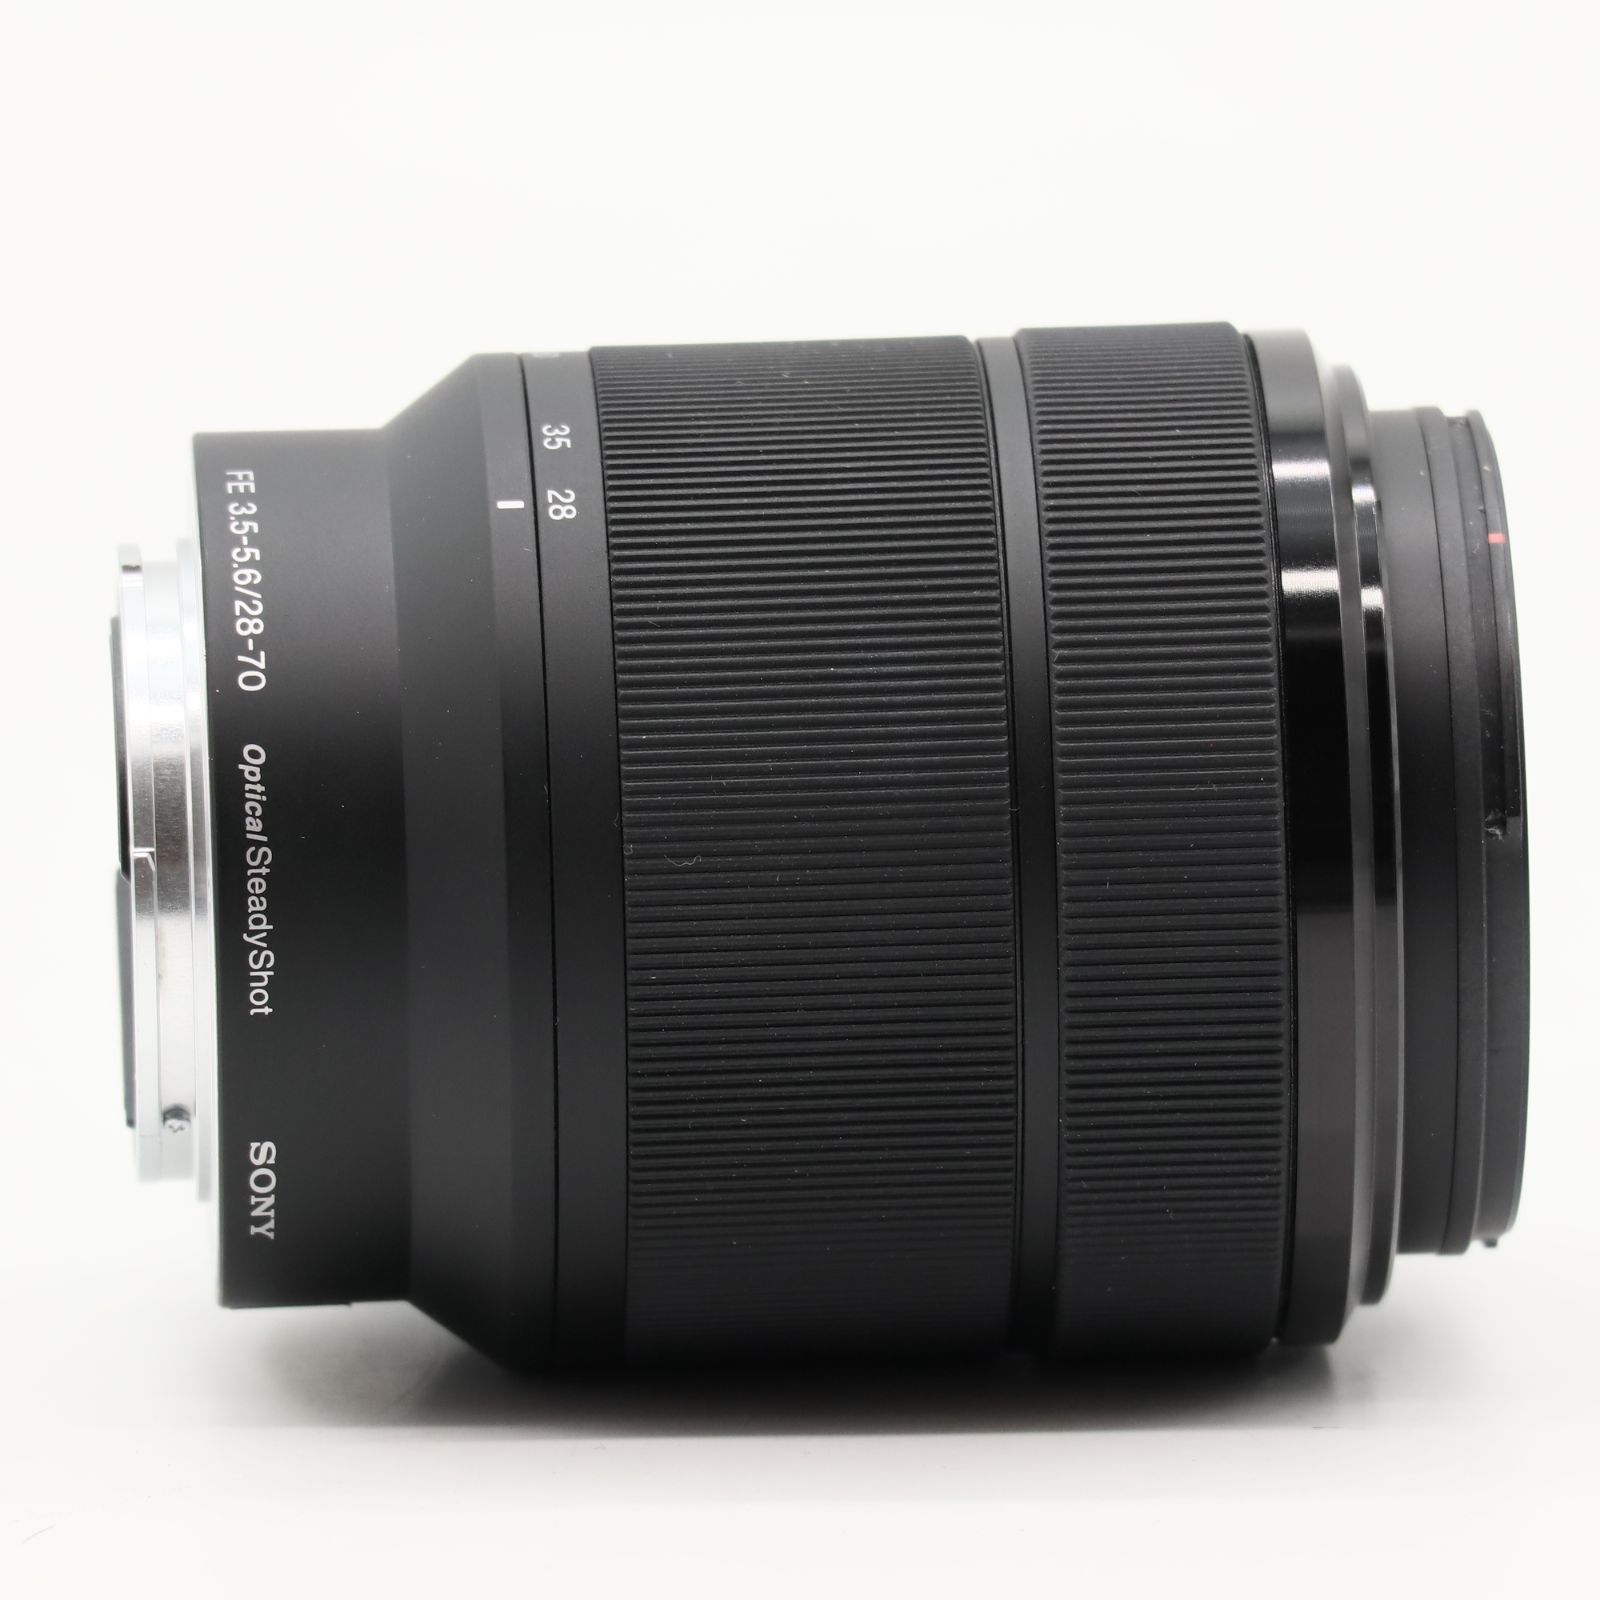 ソニー(SONY) 標準ズームレンズ フルサイズ FE 28-70mm F3.5-5.6 OSS デジタル一眼カメラα[Eマウント]用 純正レンズ  SEL2870 #3413 - メルカリ